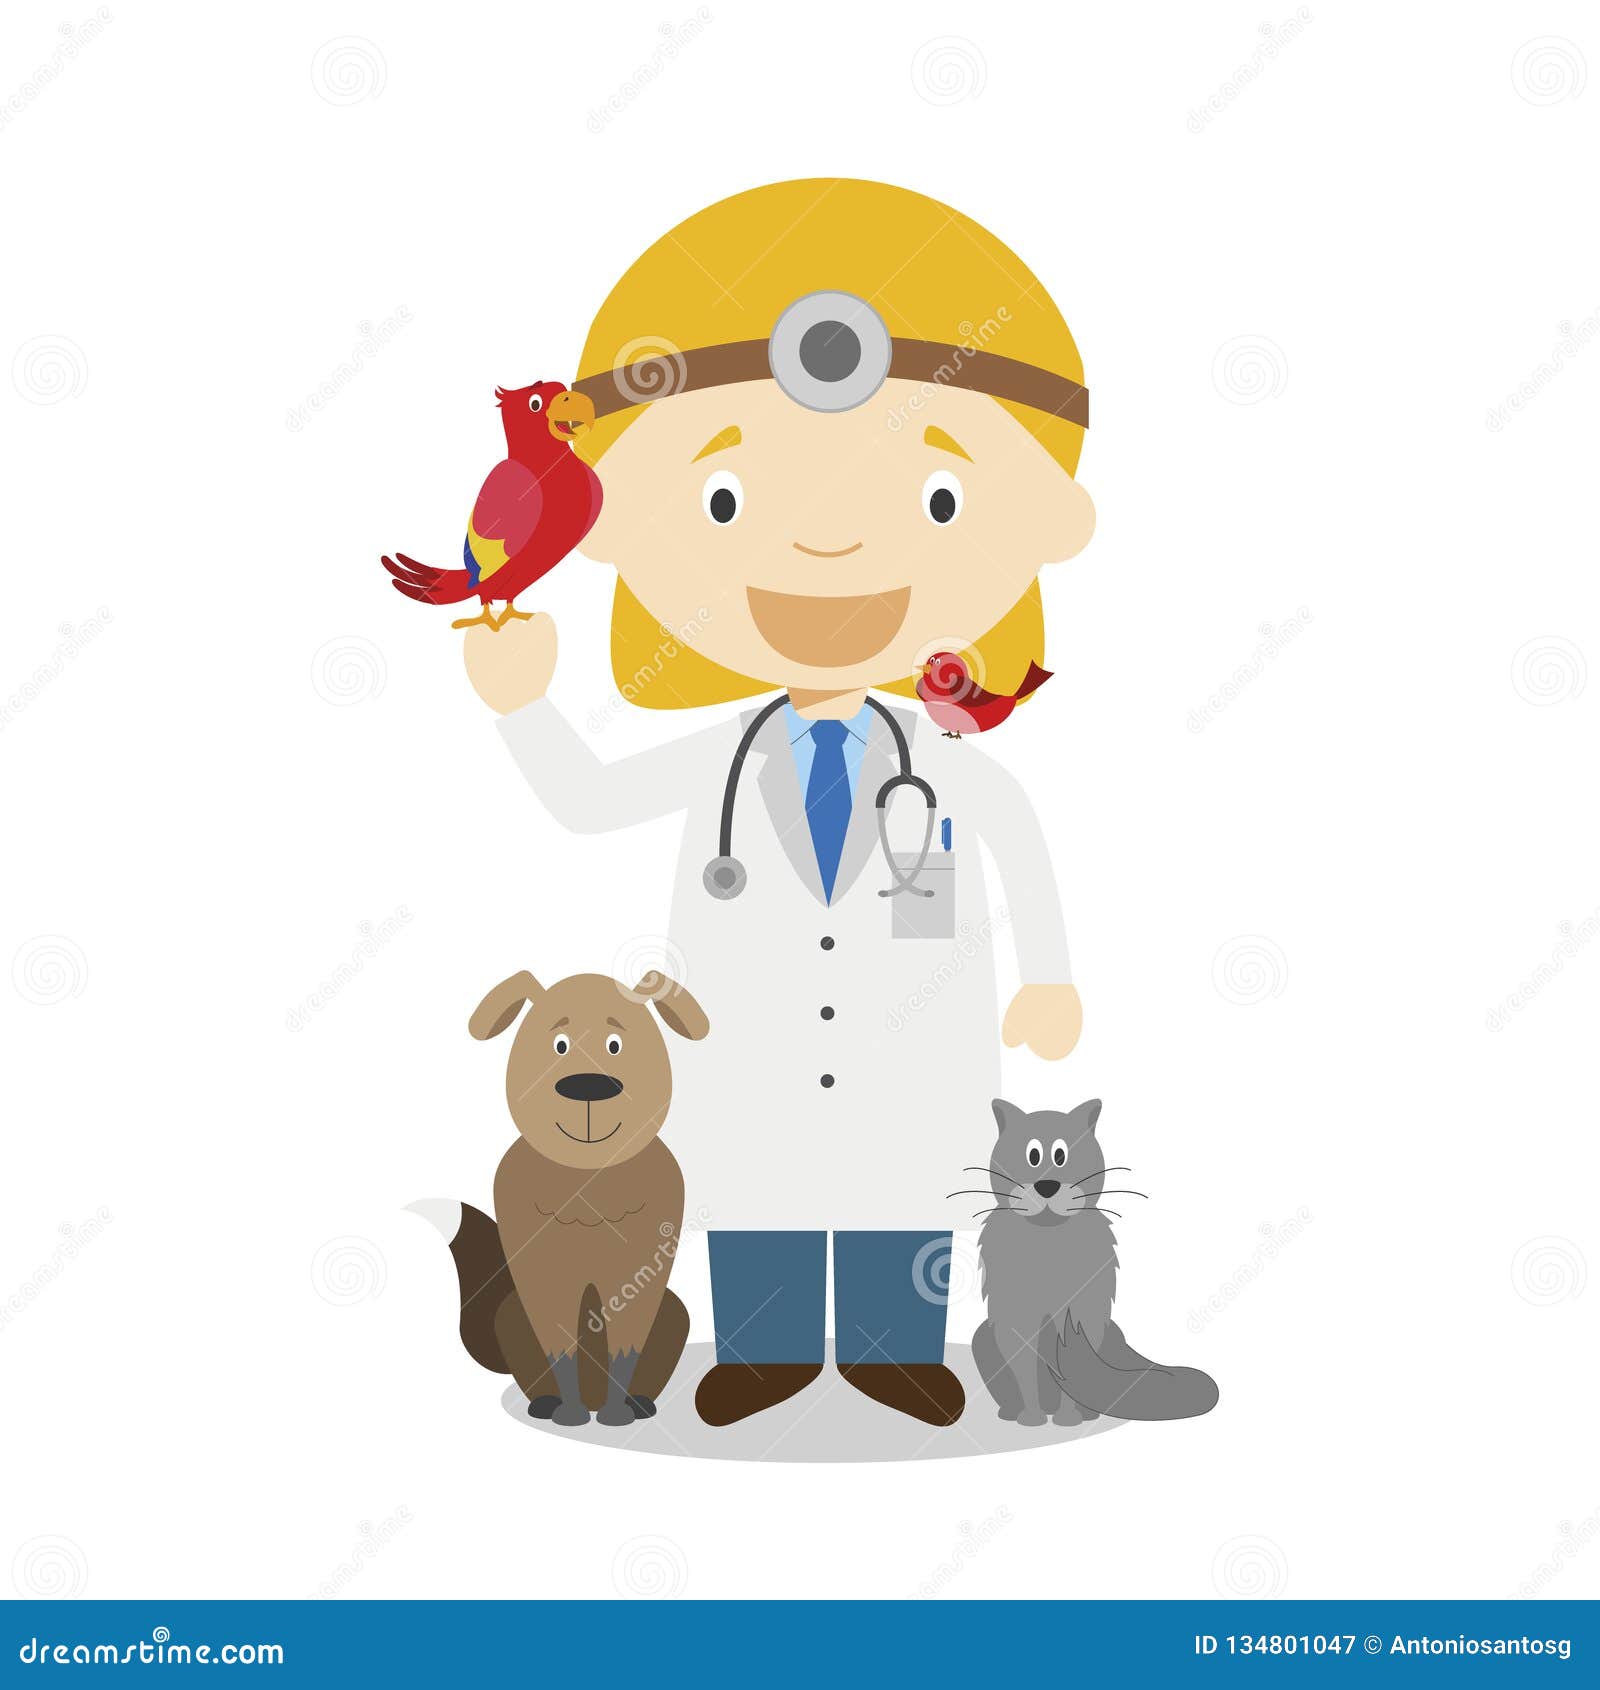 Профессия ветеринар для детей карточка